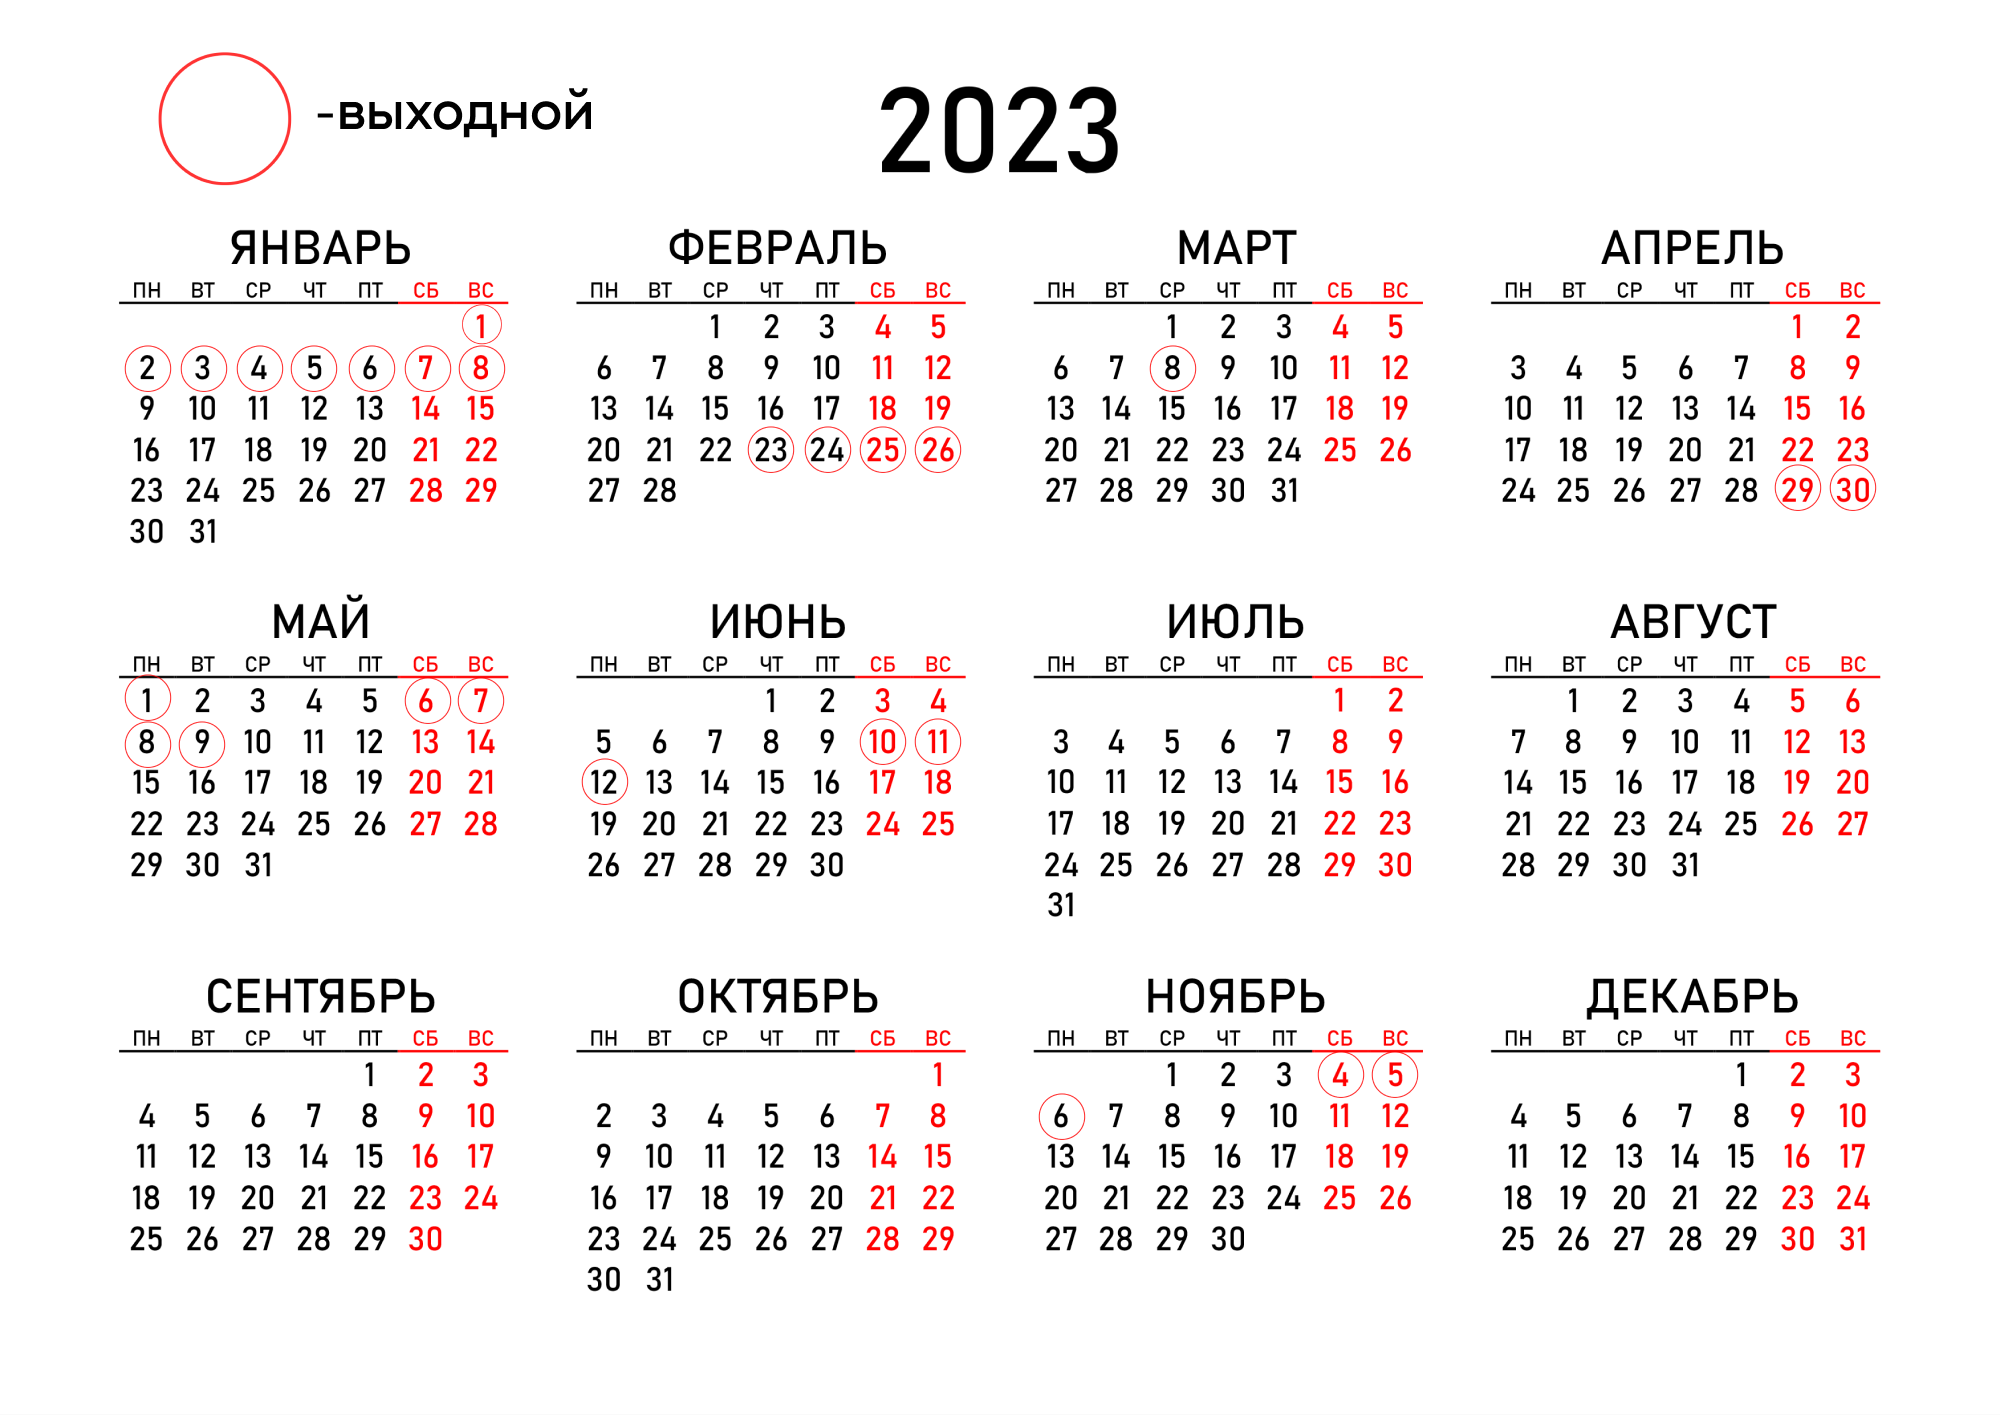 Календарь 2022 года с праздничными днями и выходными днями Россия. Выходные и праздничные дни в 2022 году. Календарь выходных и праздничных дней в 2022 году. Календарь на май 2022 года с праздничными днями и выходными.